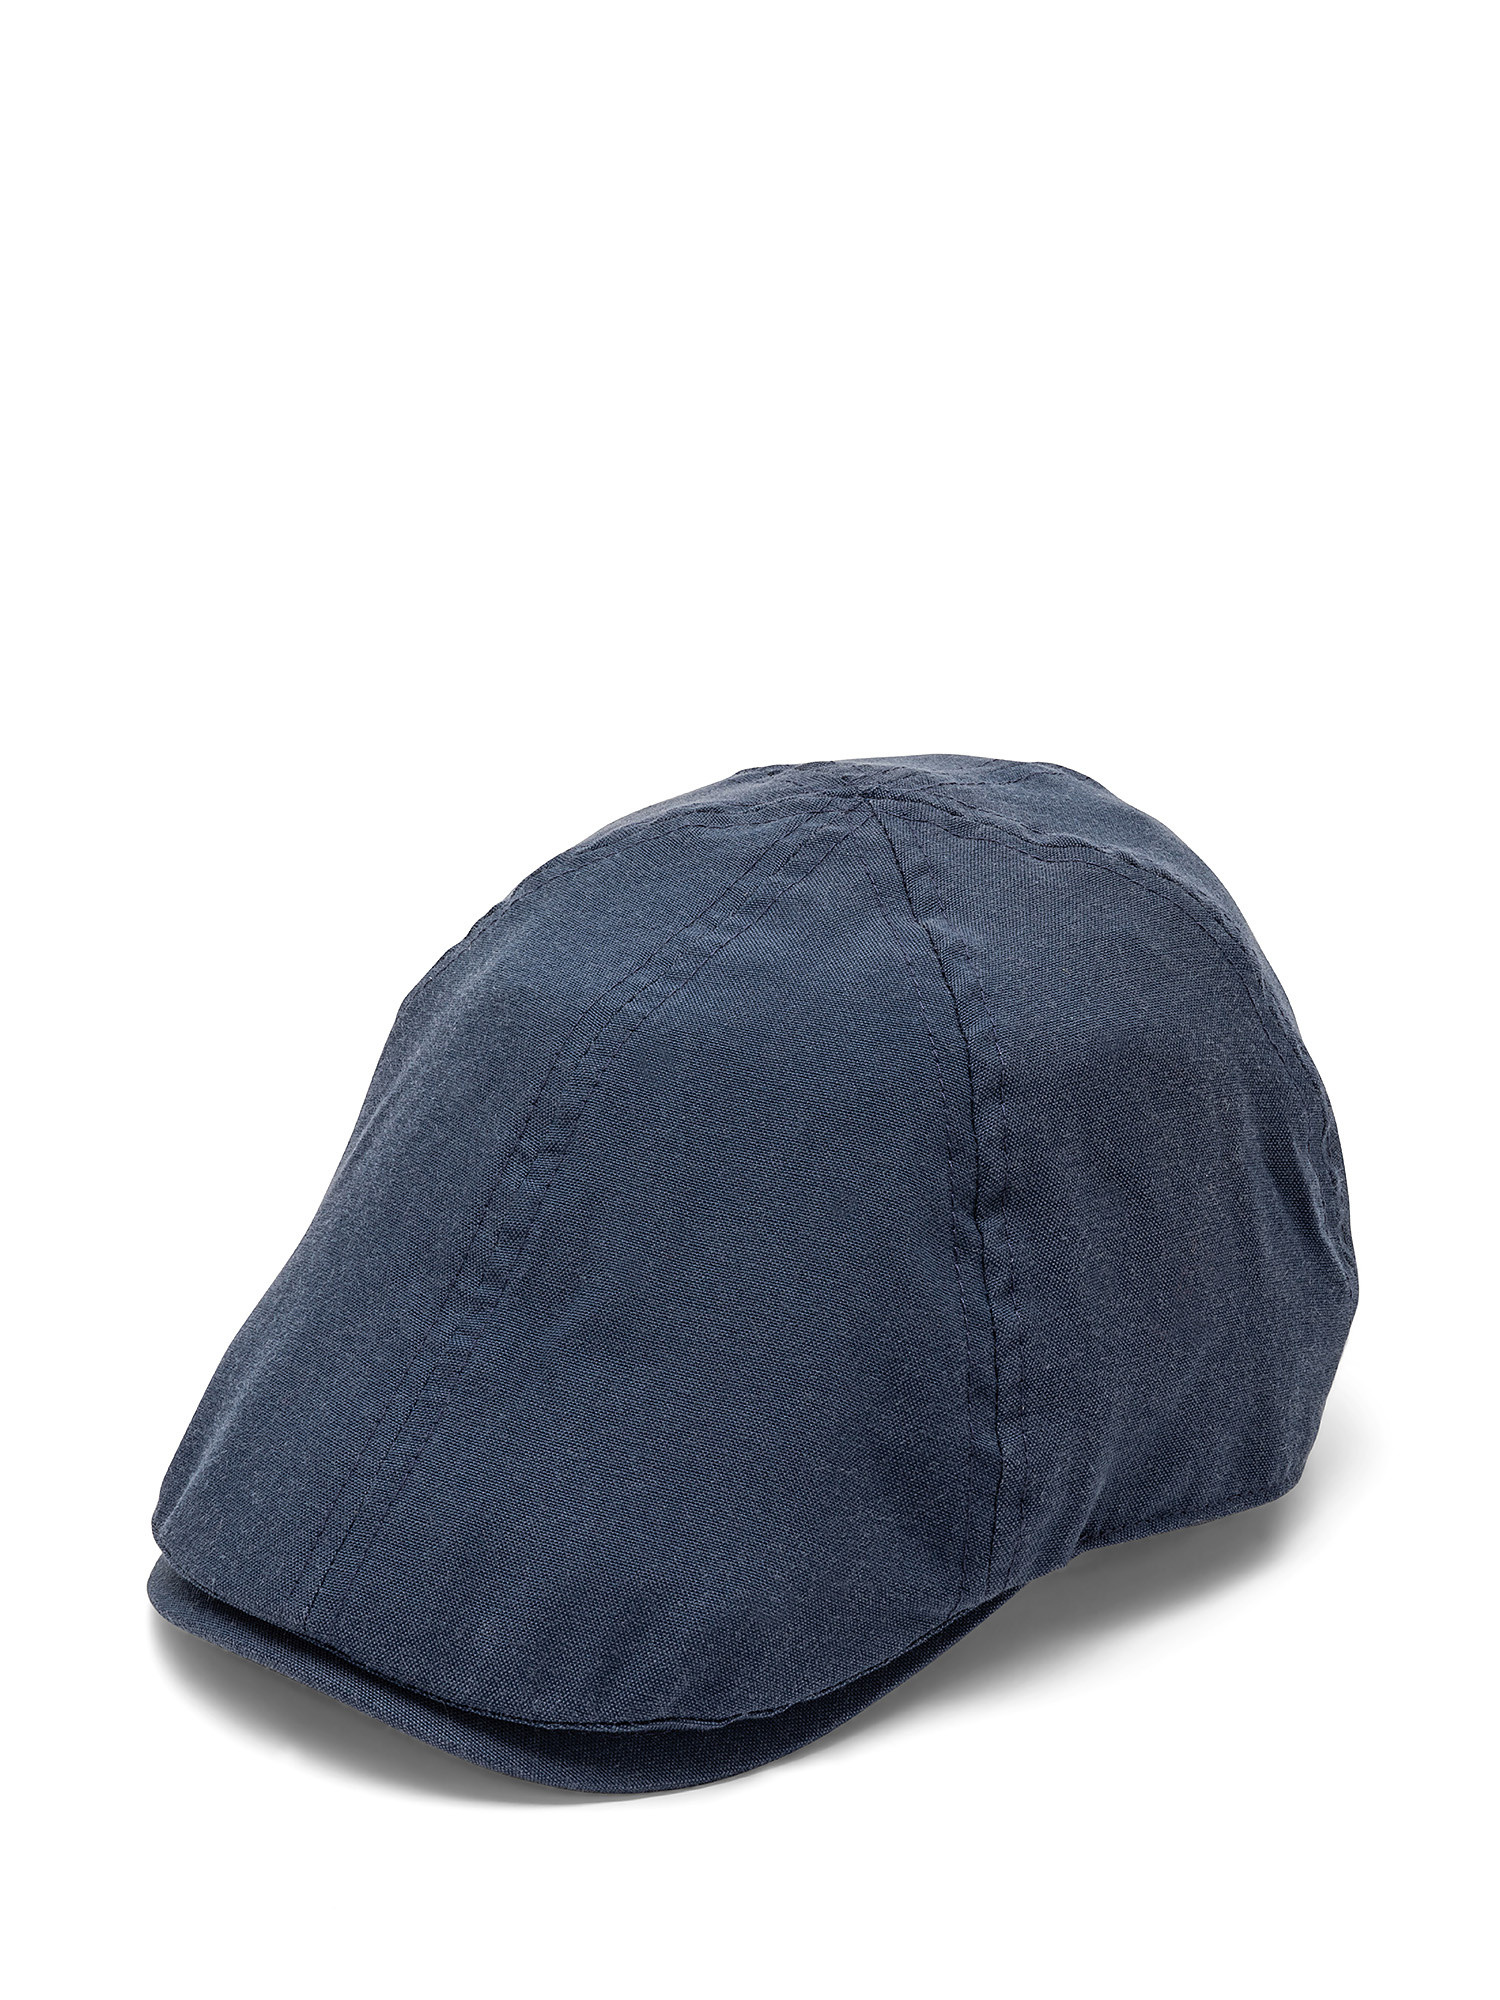 Cappello tessuto oxford tinta unita, Blu, large